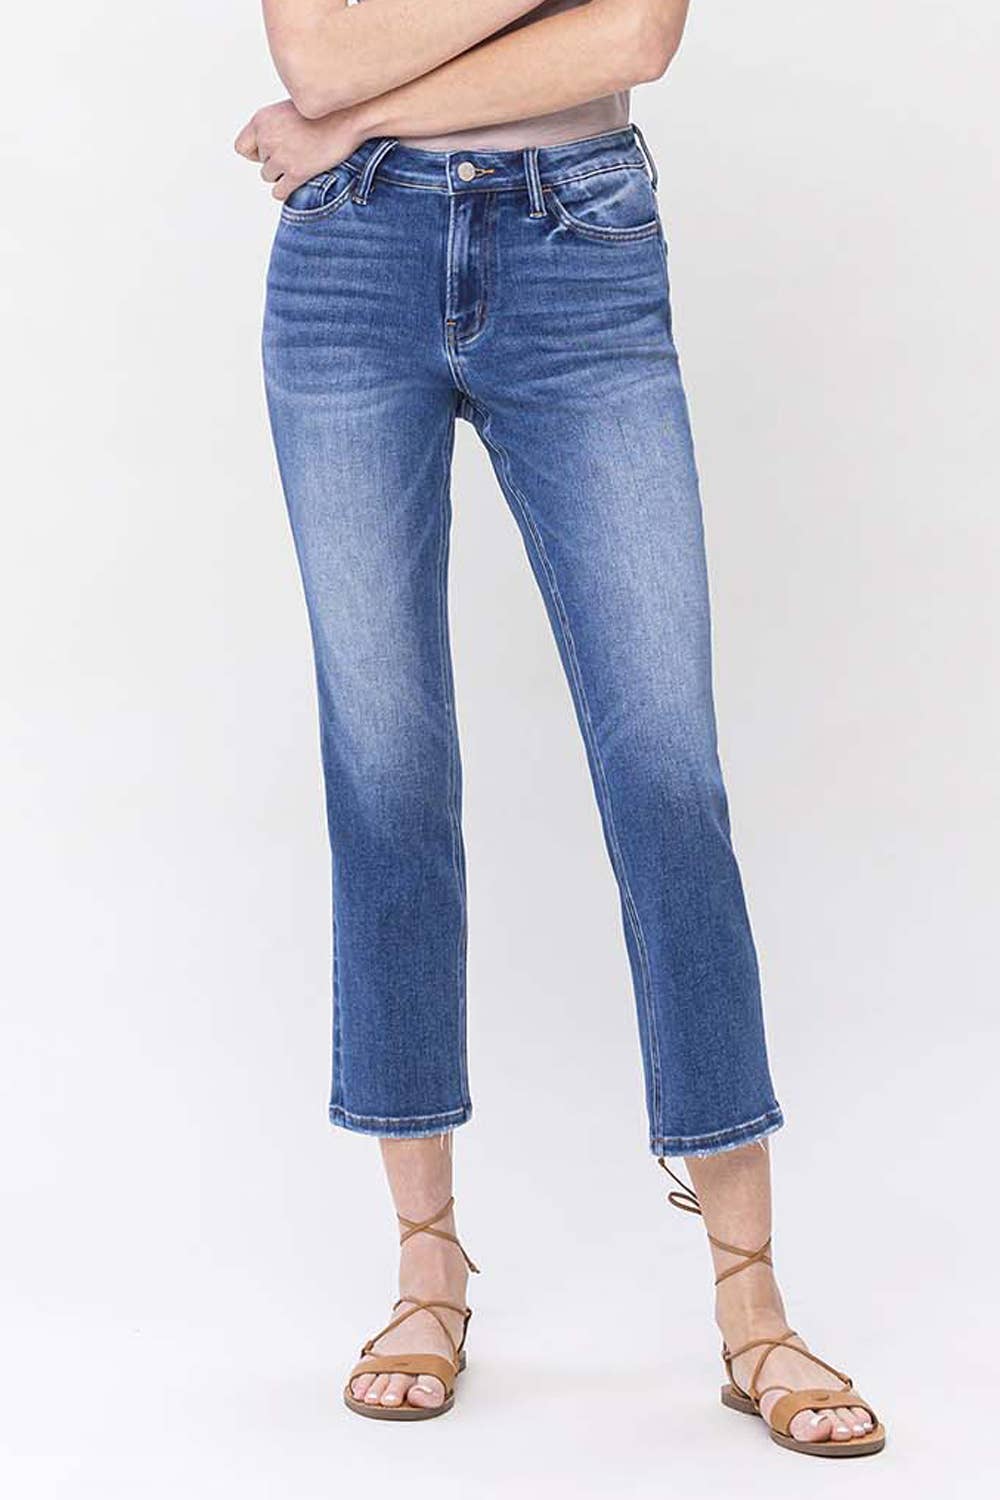 Super High rise ankle straight jeans - Lovervet by Vervet